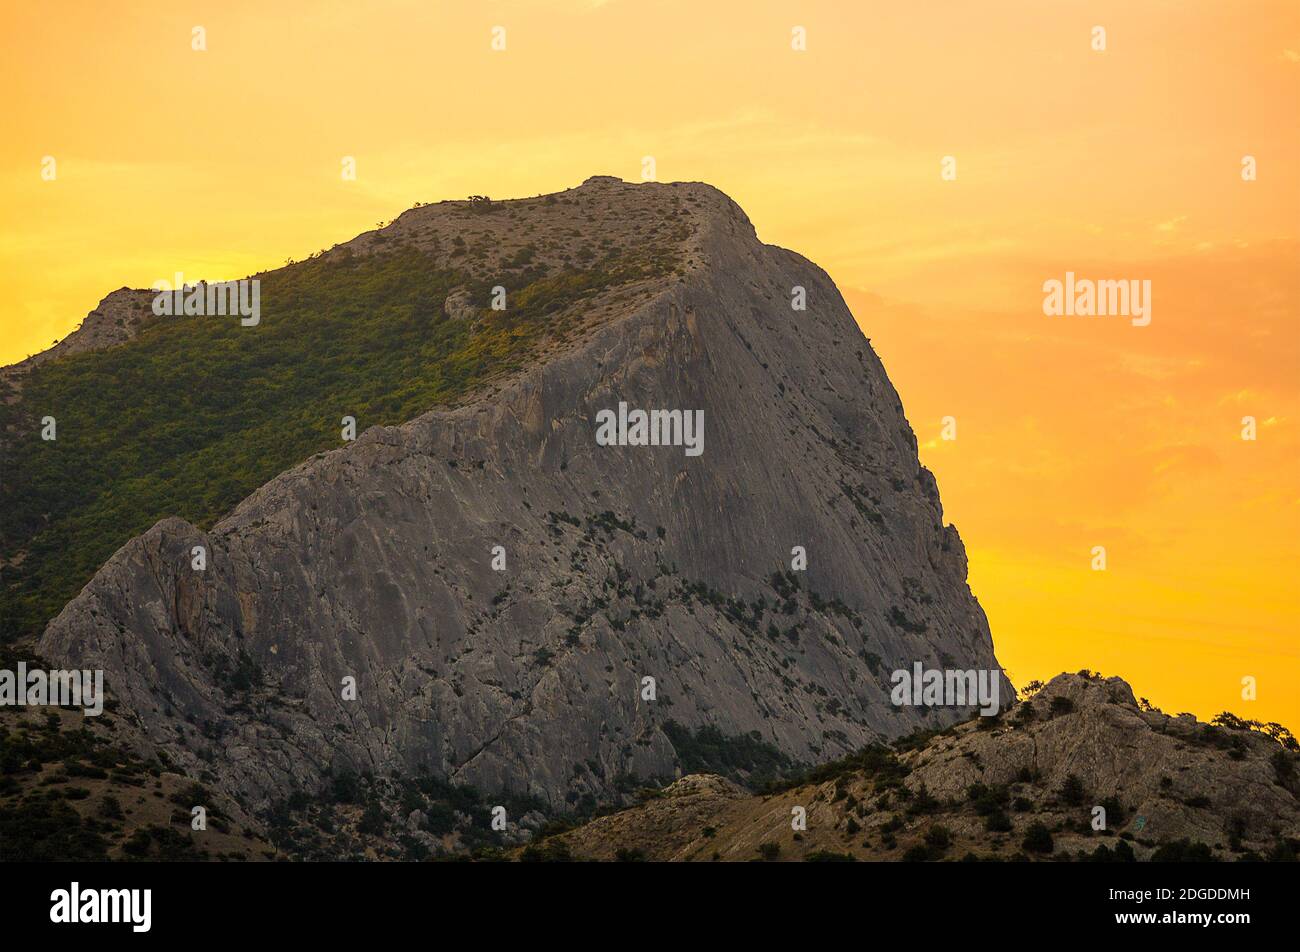 Alta montagna grigia con un pendio pianeggiante coperto di verde in giallo arancio luce alba del sole Foto Stock